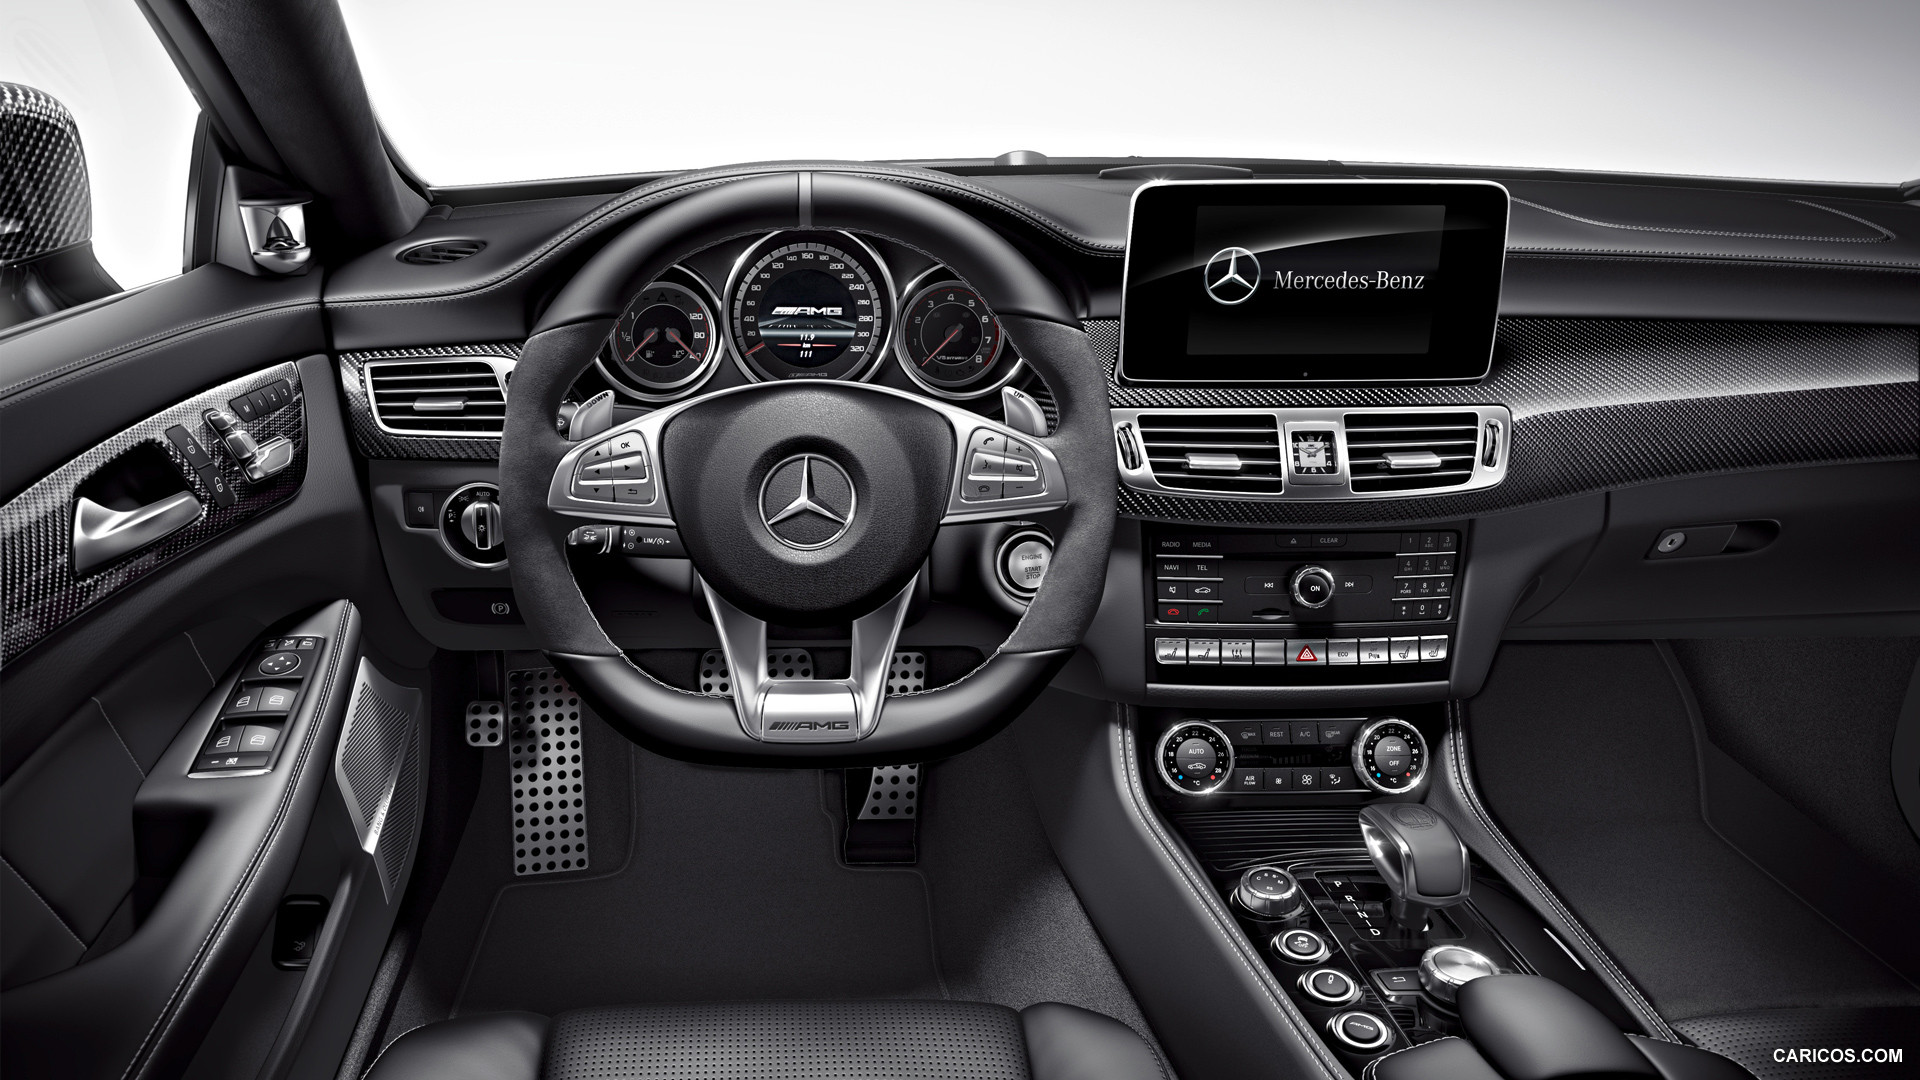 Mercedes Benz 2015 S Class